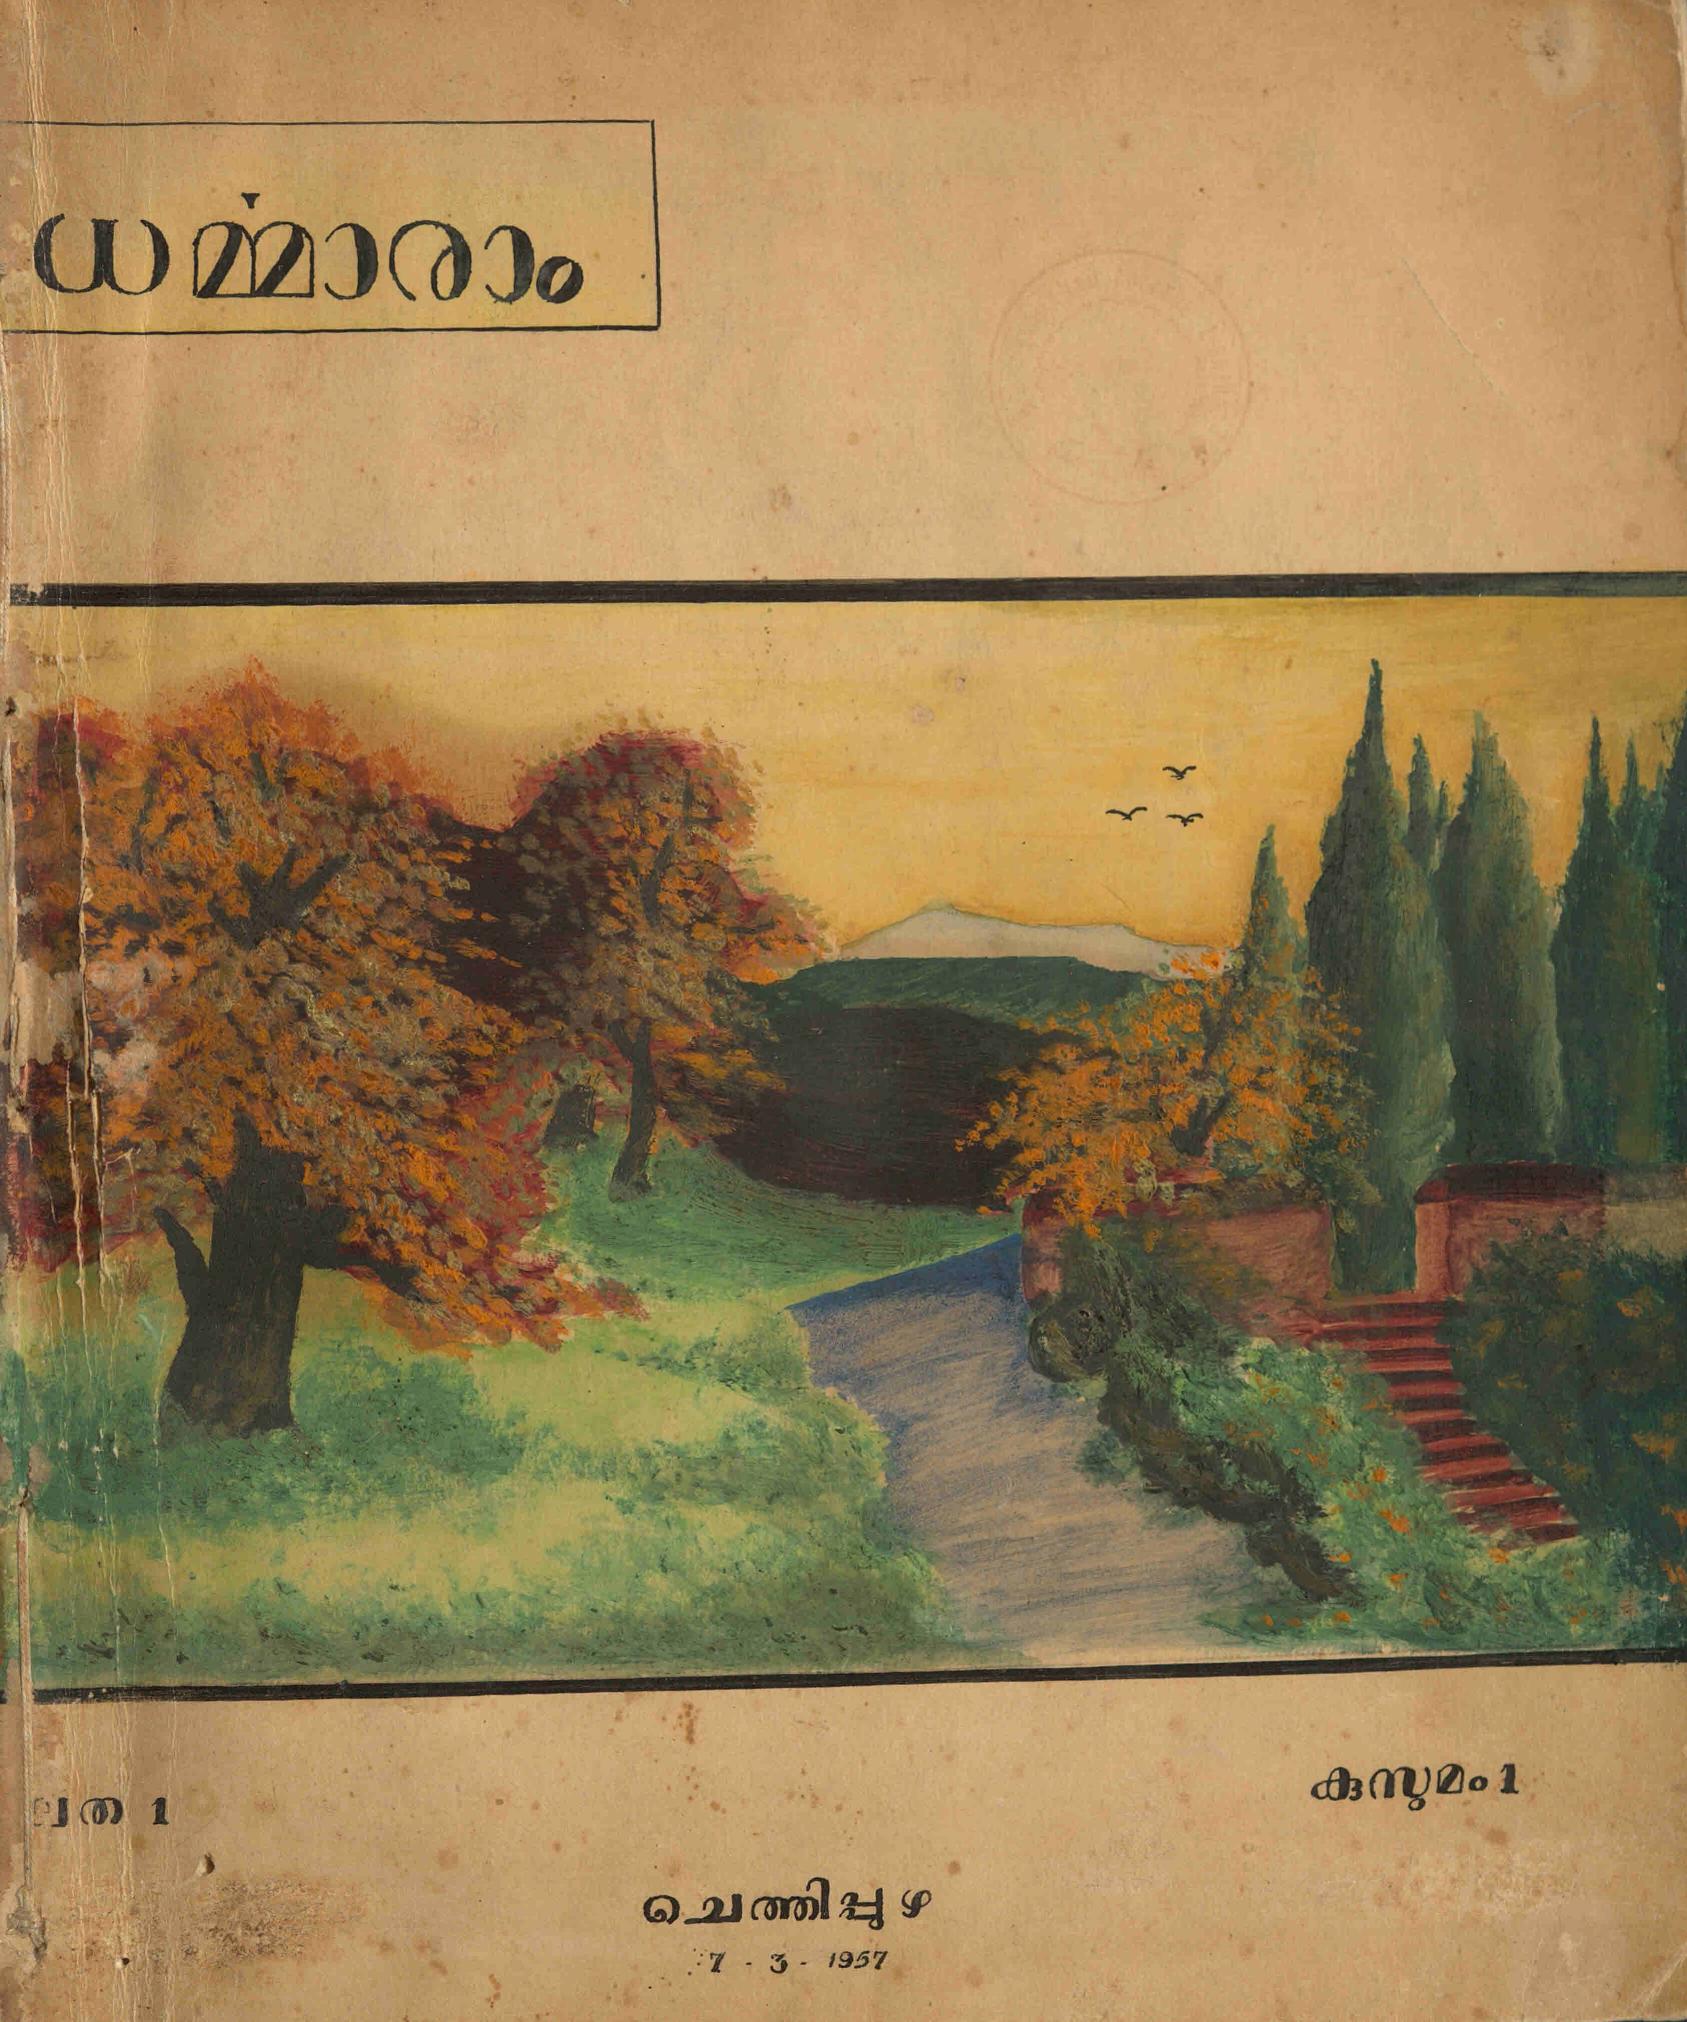 1957 - ധർമ്മാരാം - ചെത്തിപ്പുഴ - കൈയെഴുത്തുമാസിക - ലത 1 കുസുമം 1